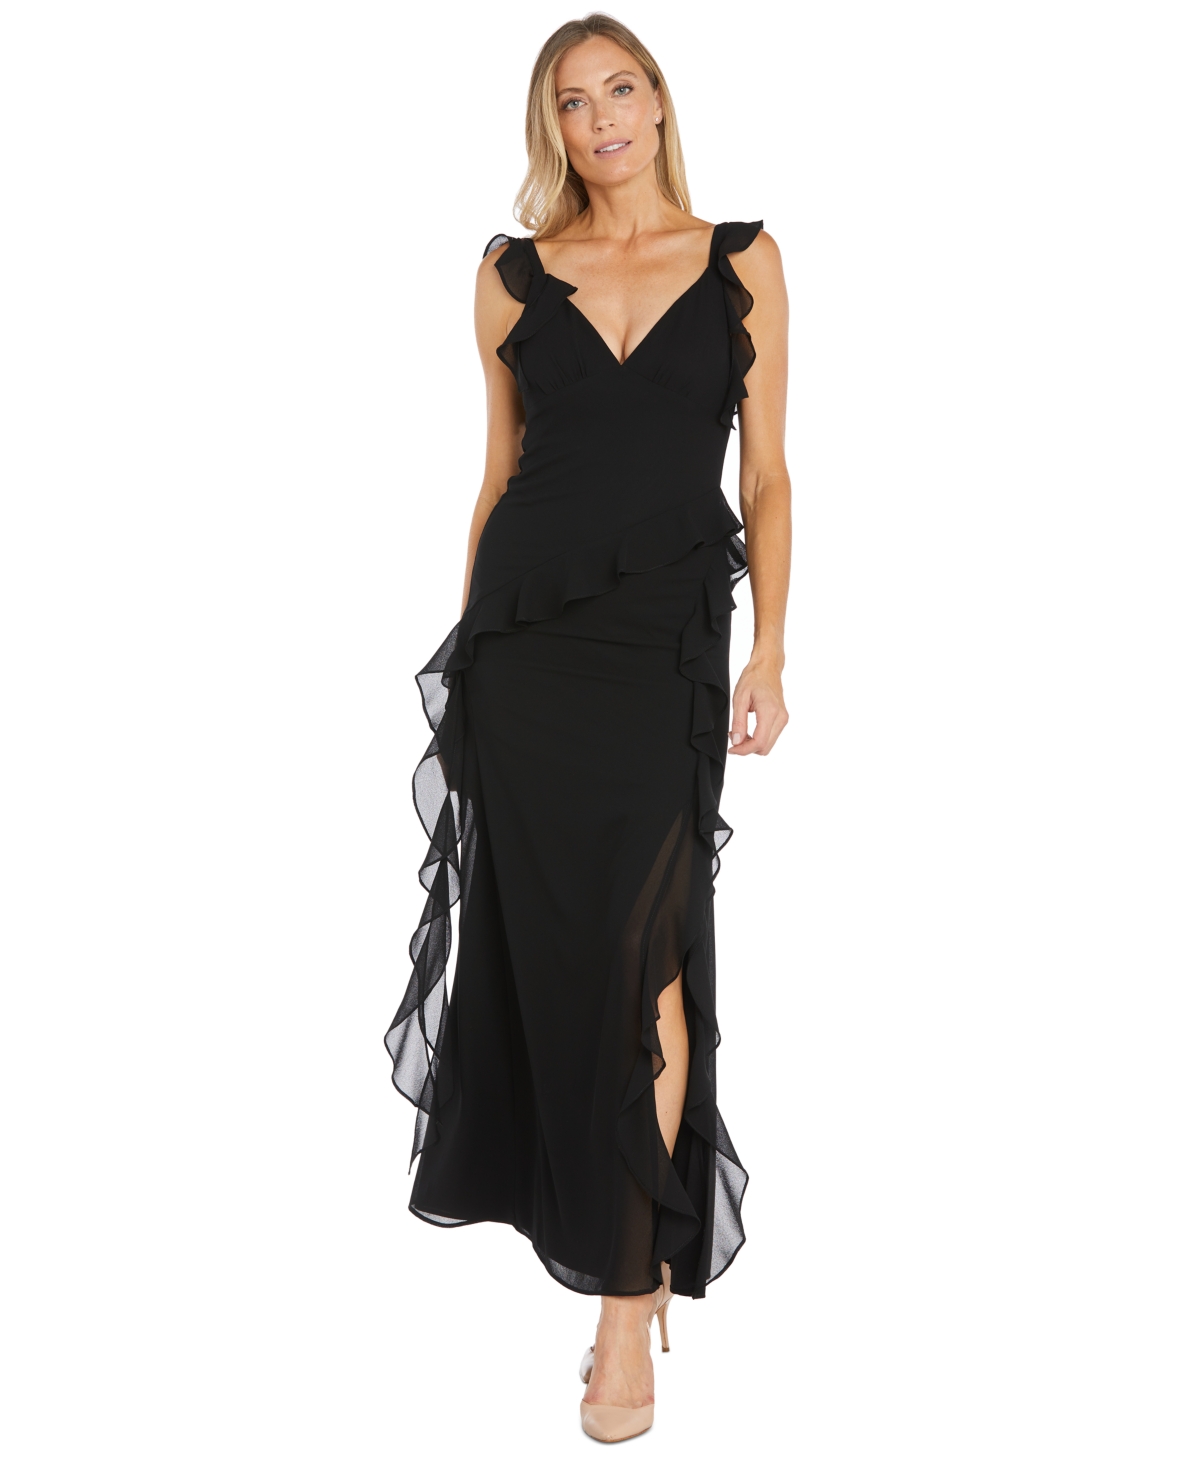 Women's Ruffled Side-Slit Gown - Black